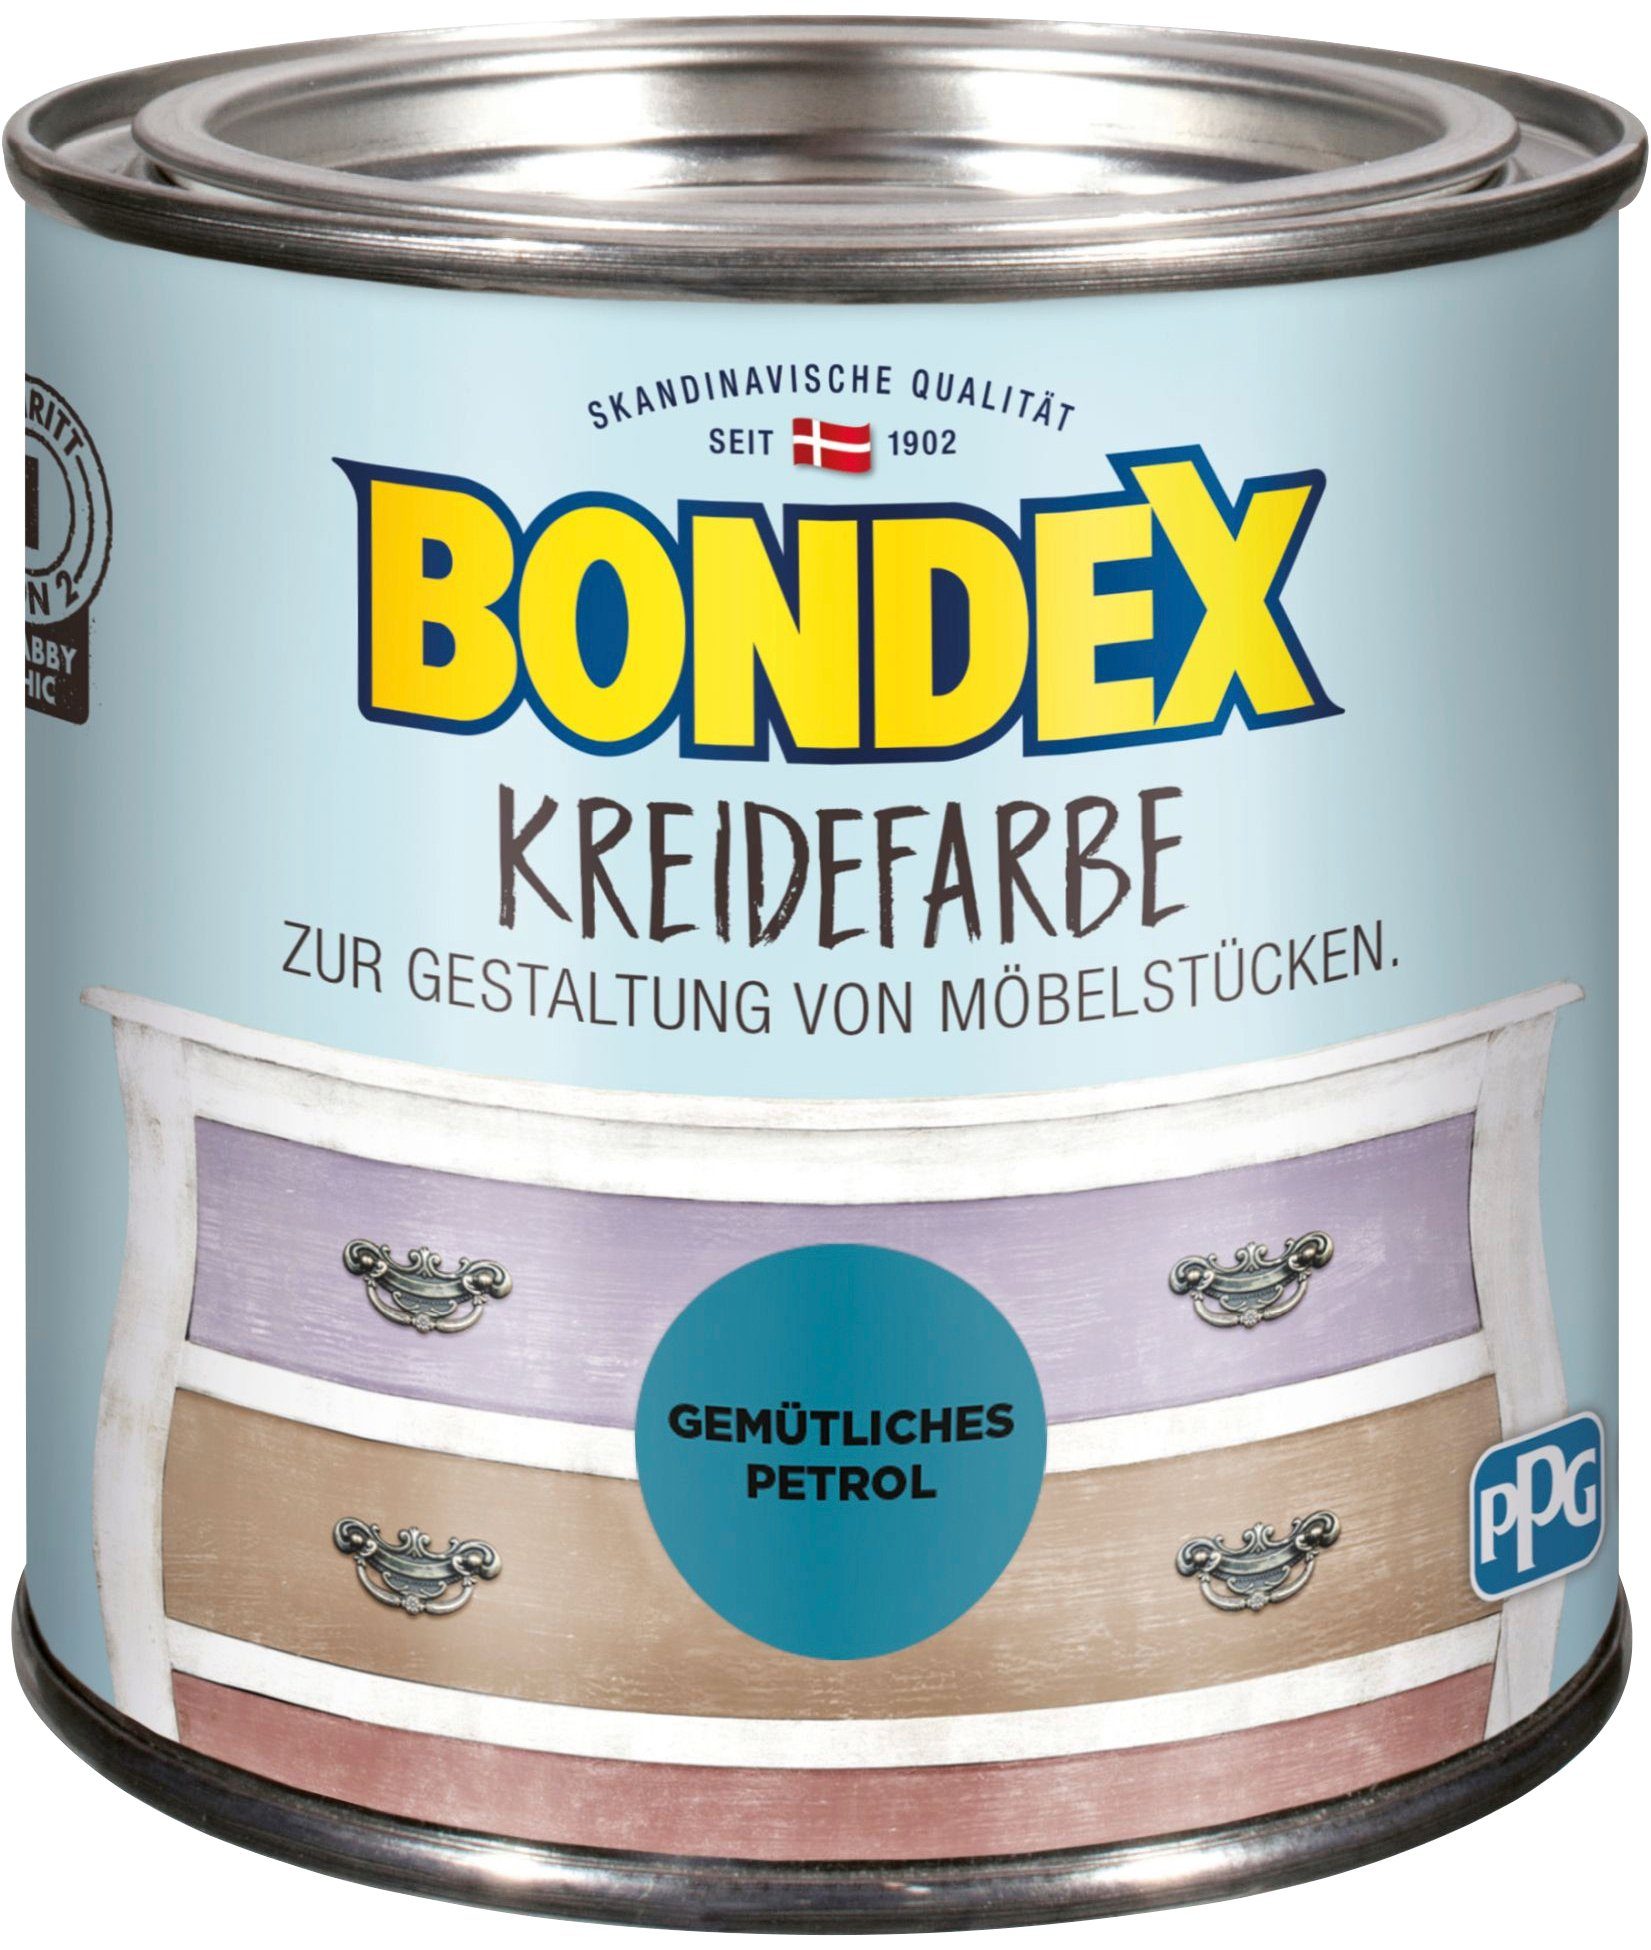 Bondex Kreidefarbe KREIDEFARBE, zur Gestaltung von Möbelstücken, 0,5 l Gemütliches Petrol